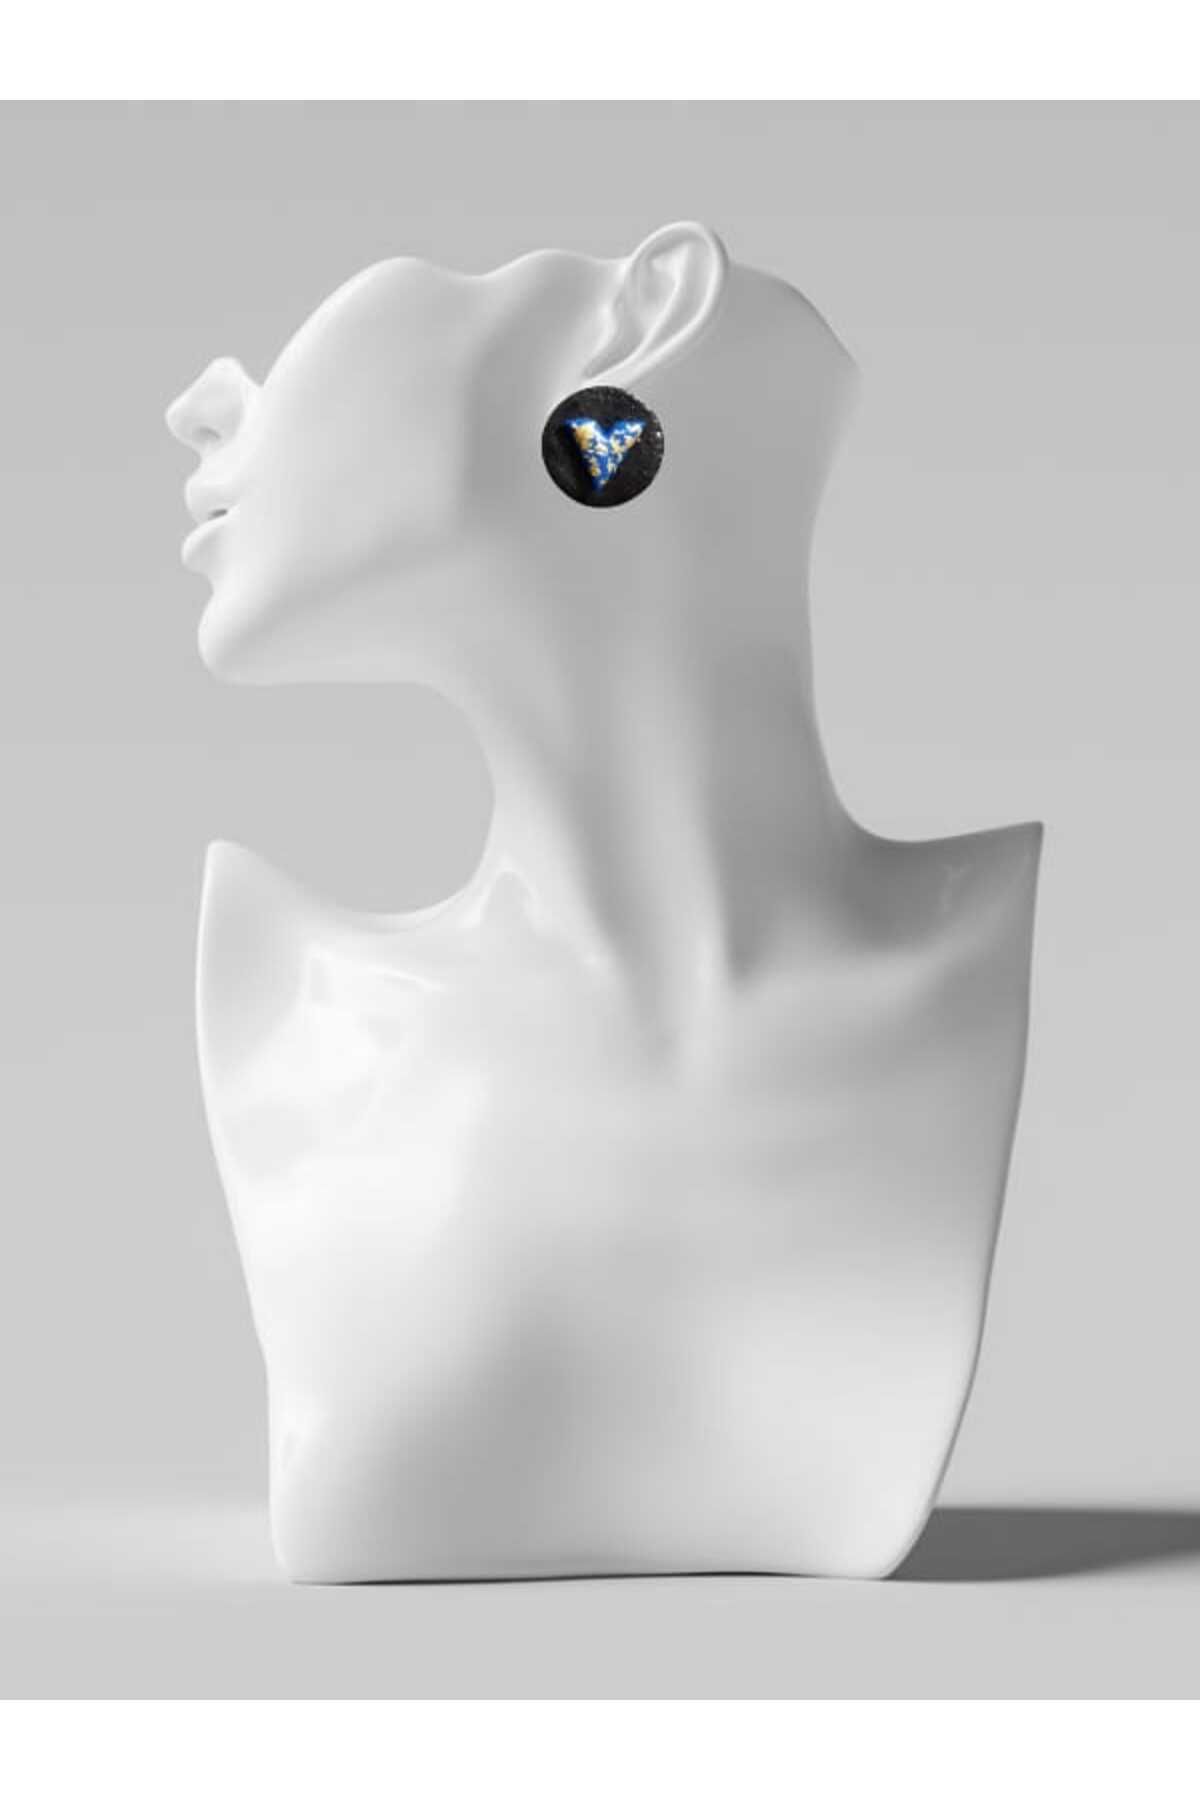 Karşı Köyden Özel Tasarım, El Yapımı Polimer Kil Üzeri Mavi Detay Küpe, Handmade Polymer Clay Earrings